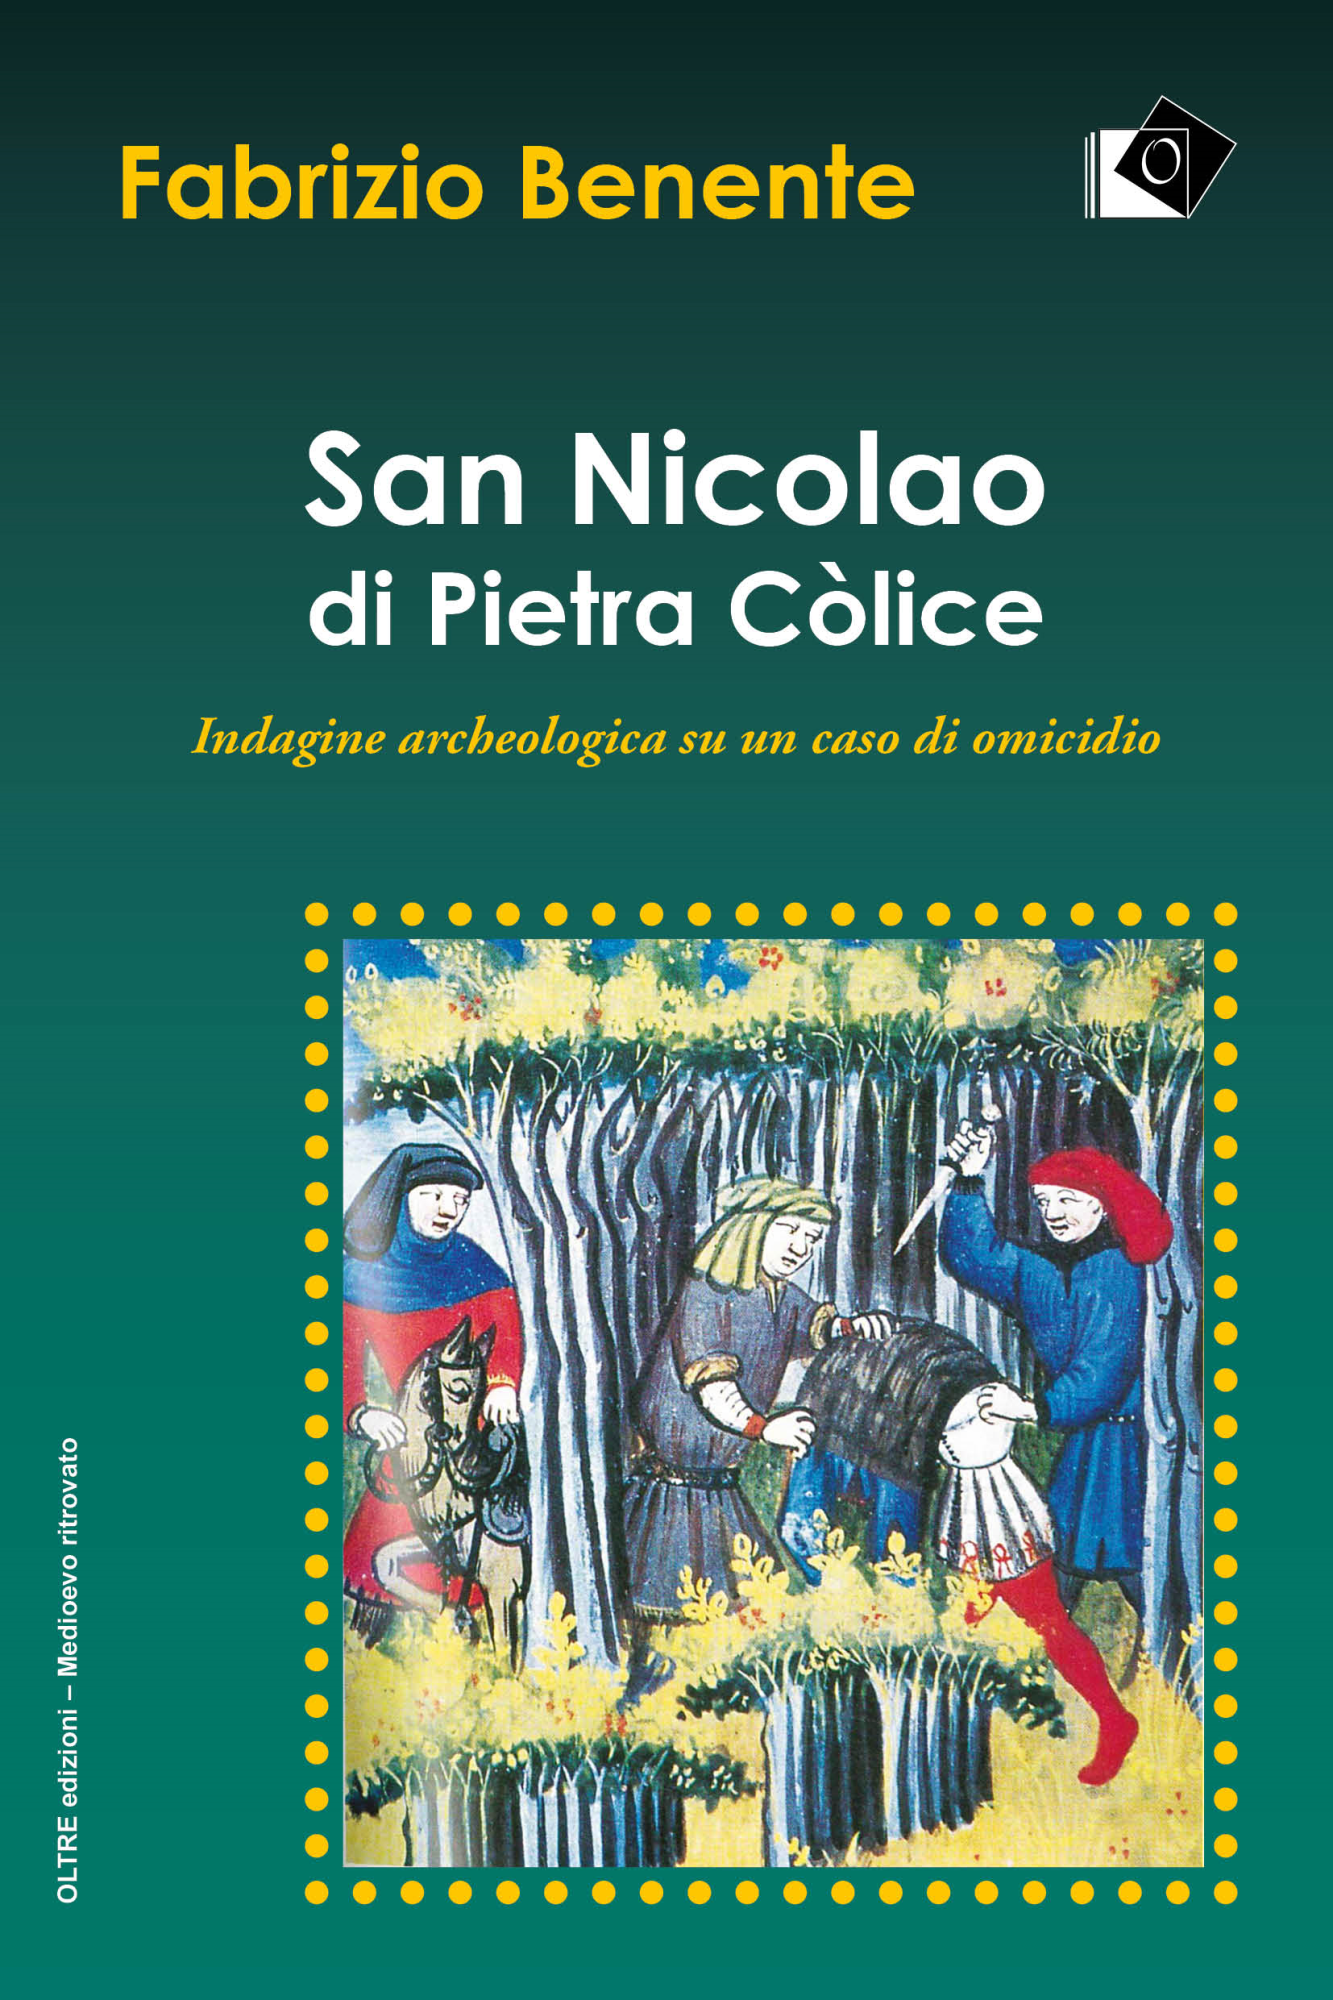 Libri Fabrizio Benente - San Nicolao Di Pietra Colice NUOVO SIGILLATO, EDIZIONE DEL 11/10/2020 SUBITO DISPONIBILE